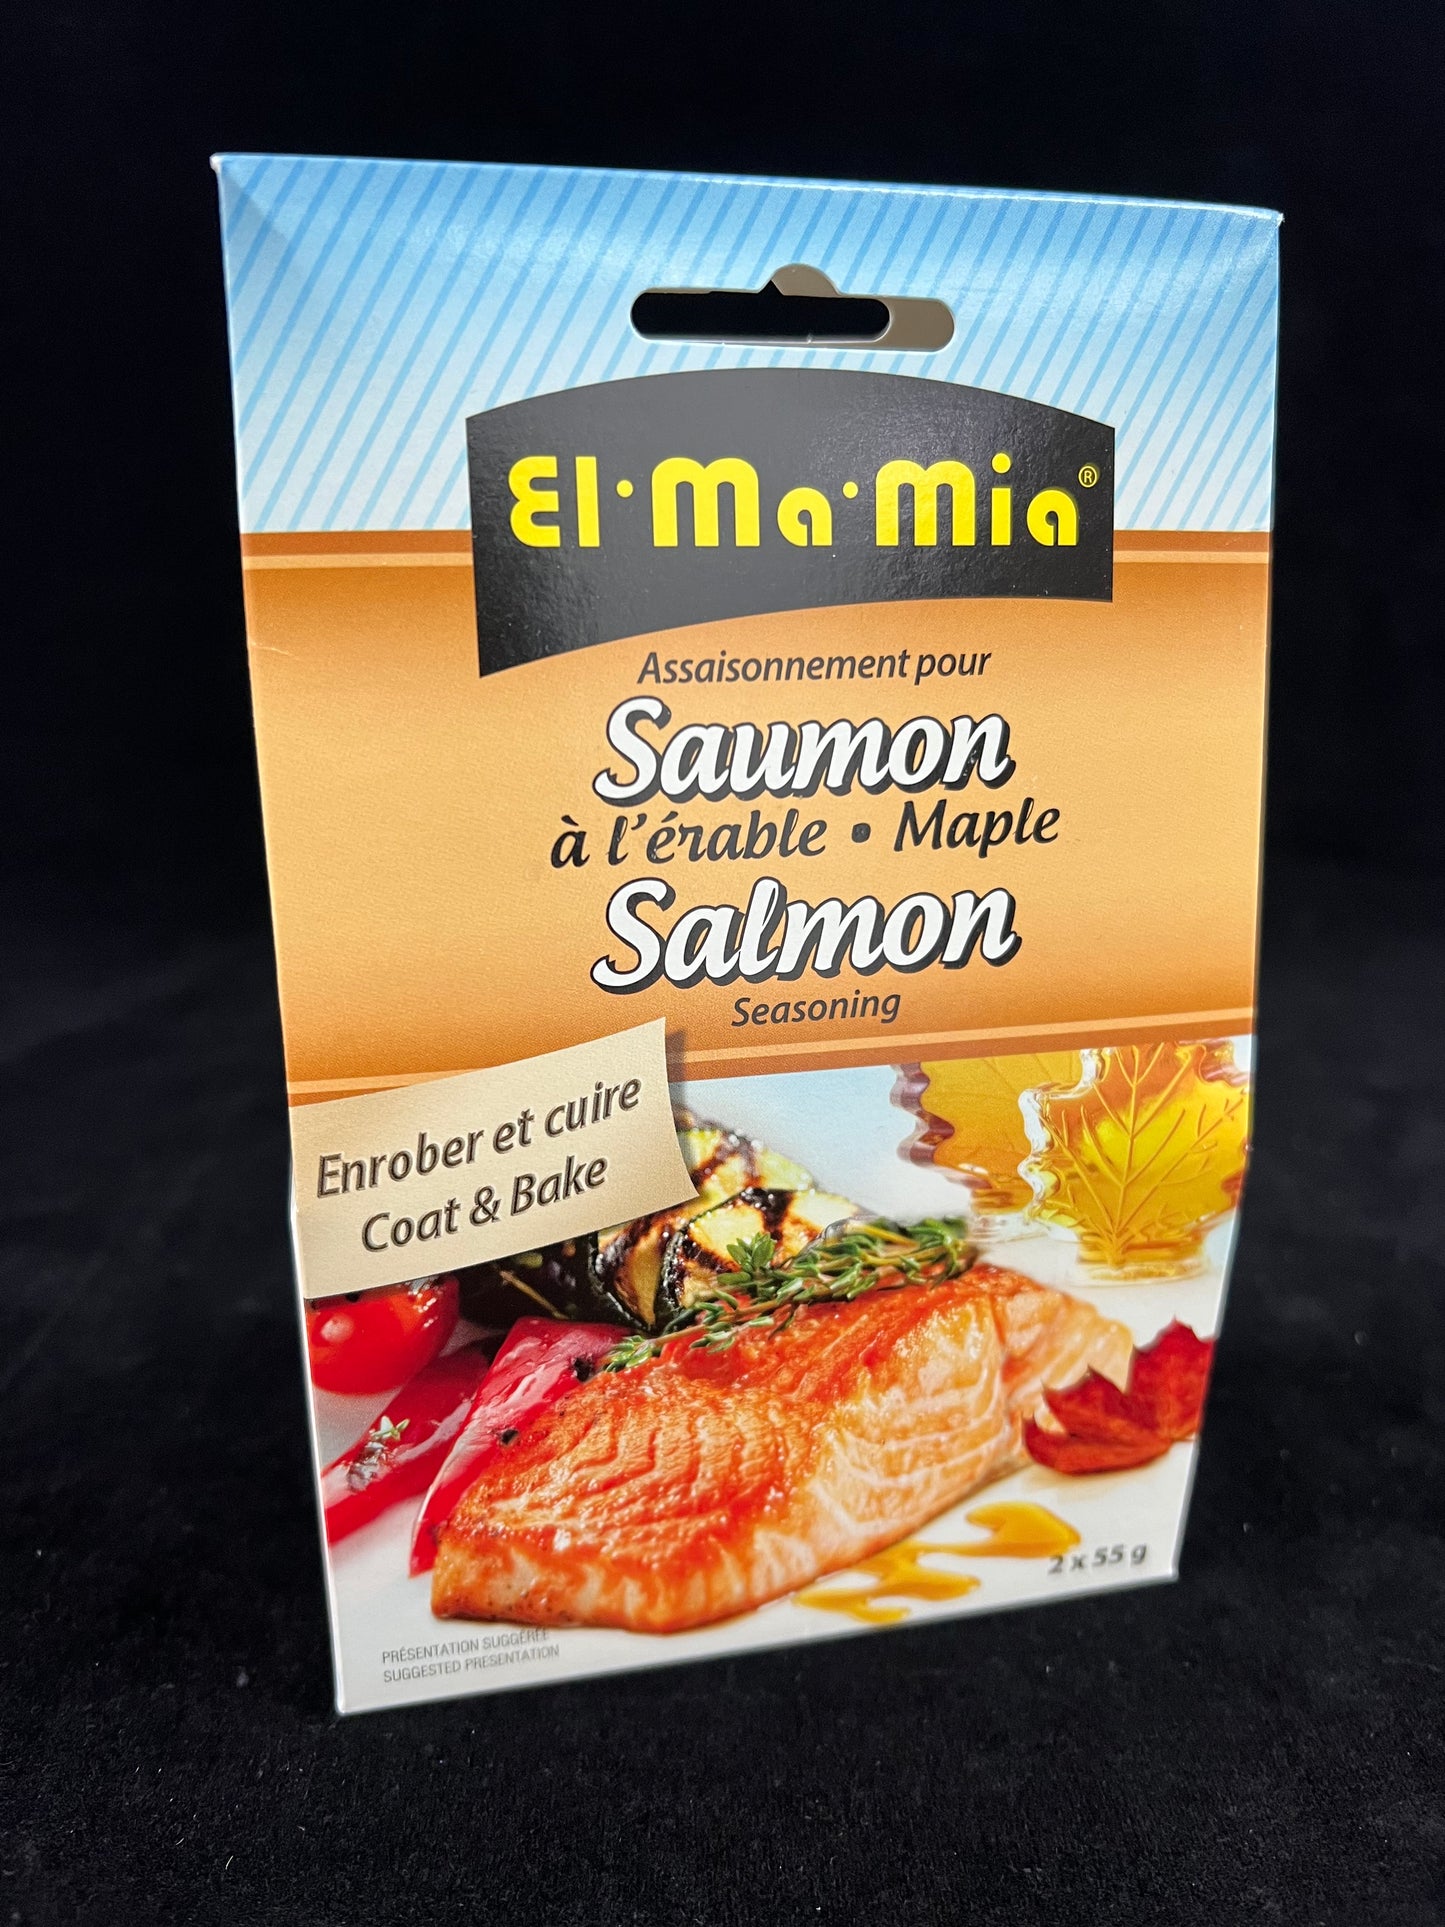 El Ma Mia - Seasoning / Seasoning - 2 x 55g